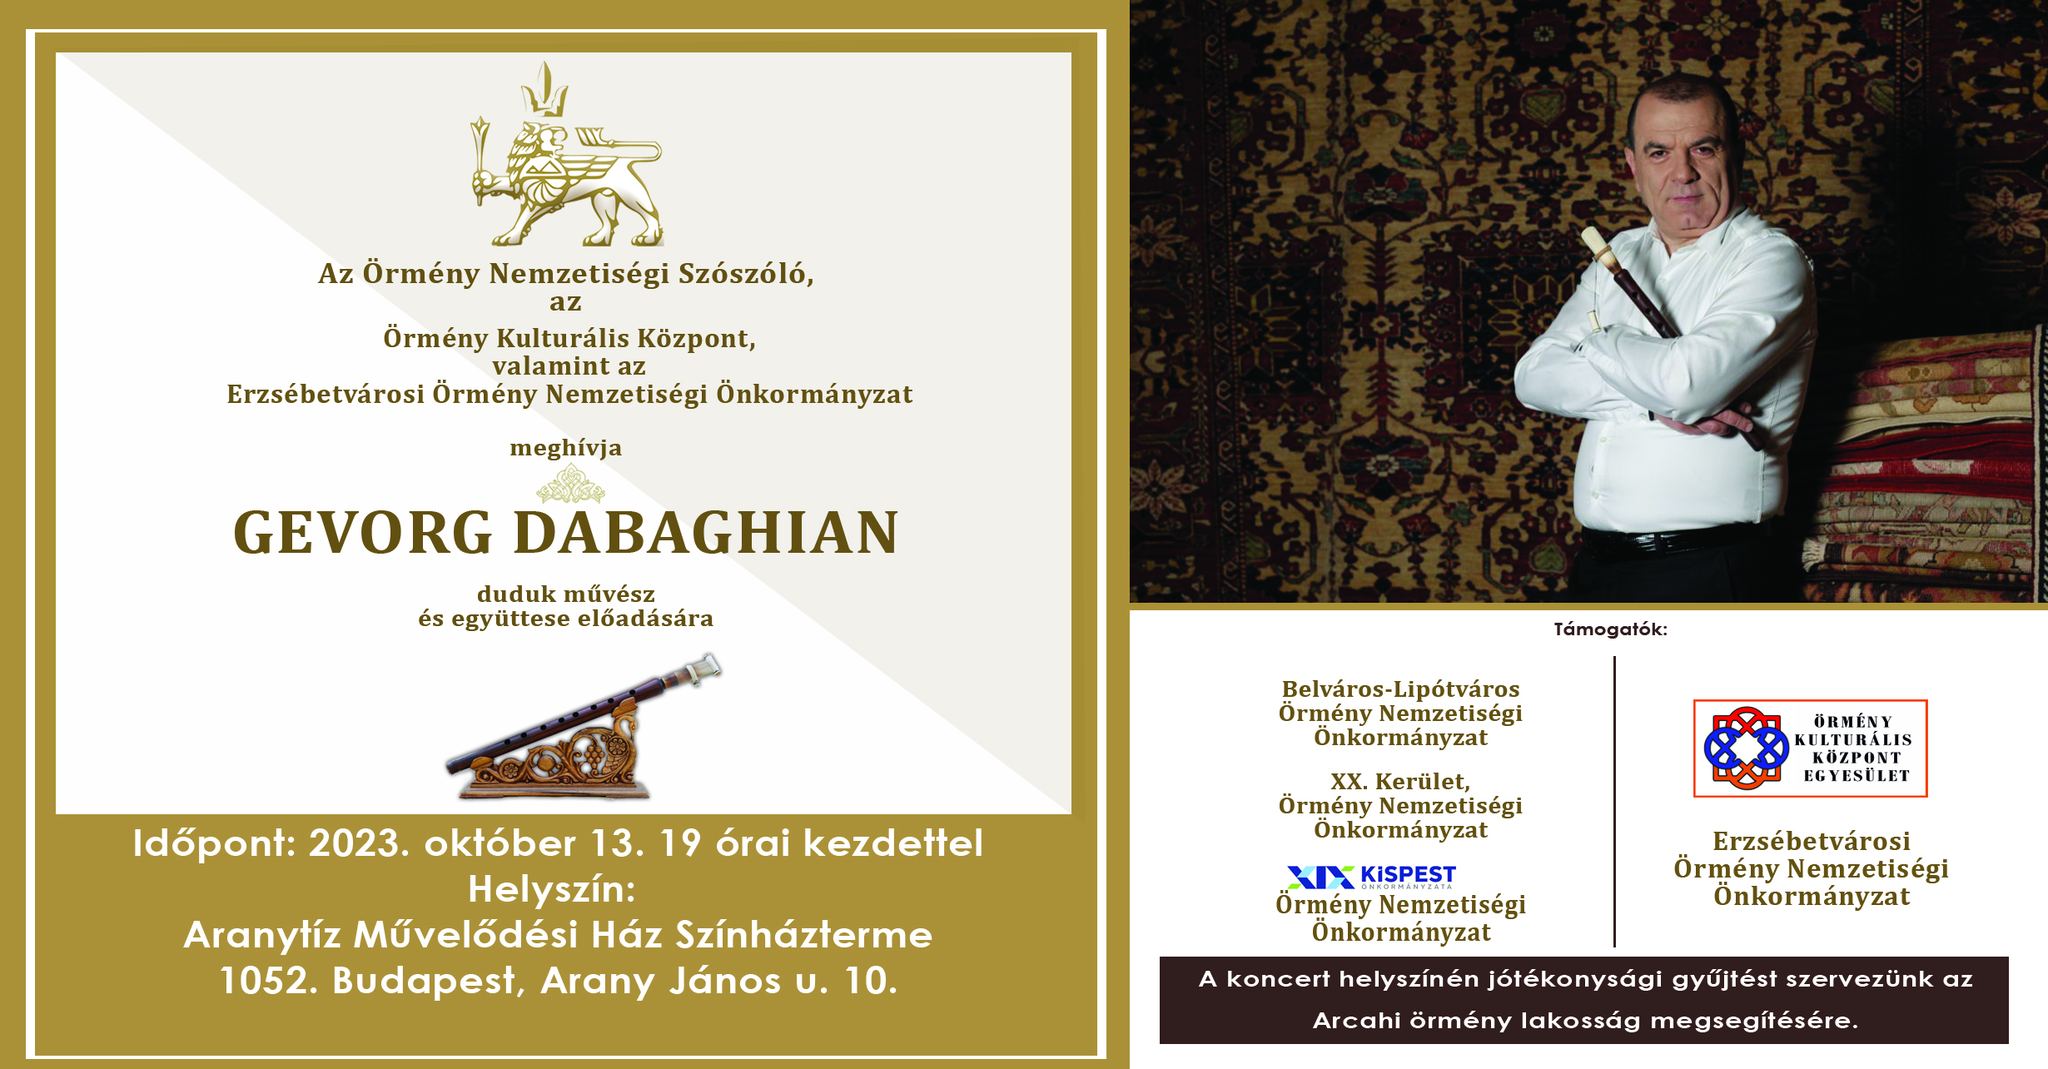 Gevorg Dabaghian és együttese – Koncert és jótékonysági est.